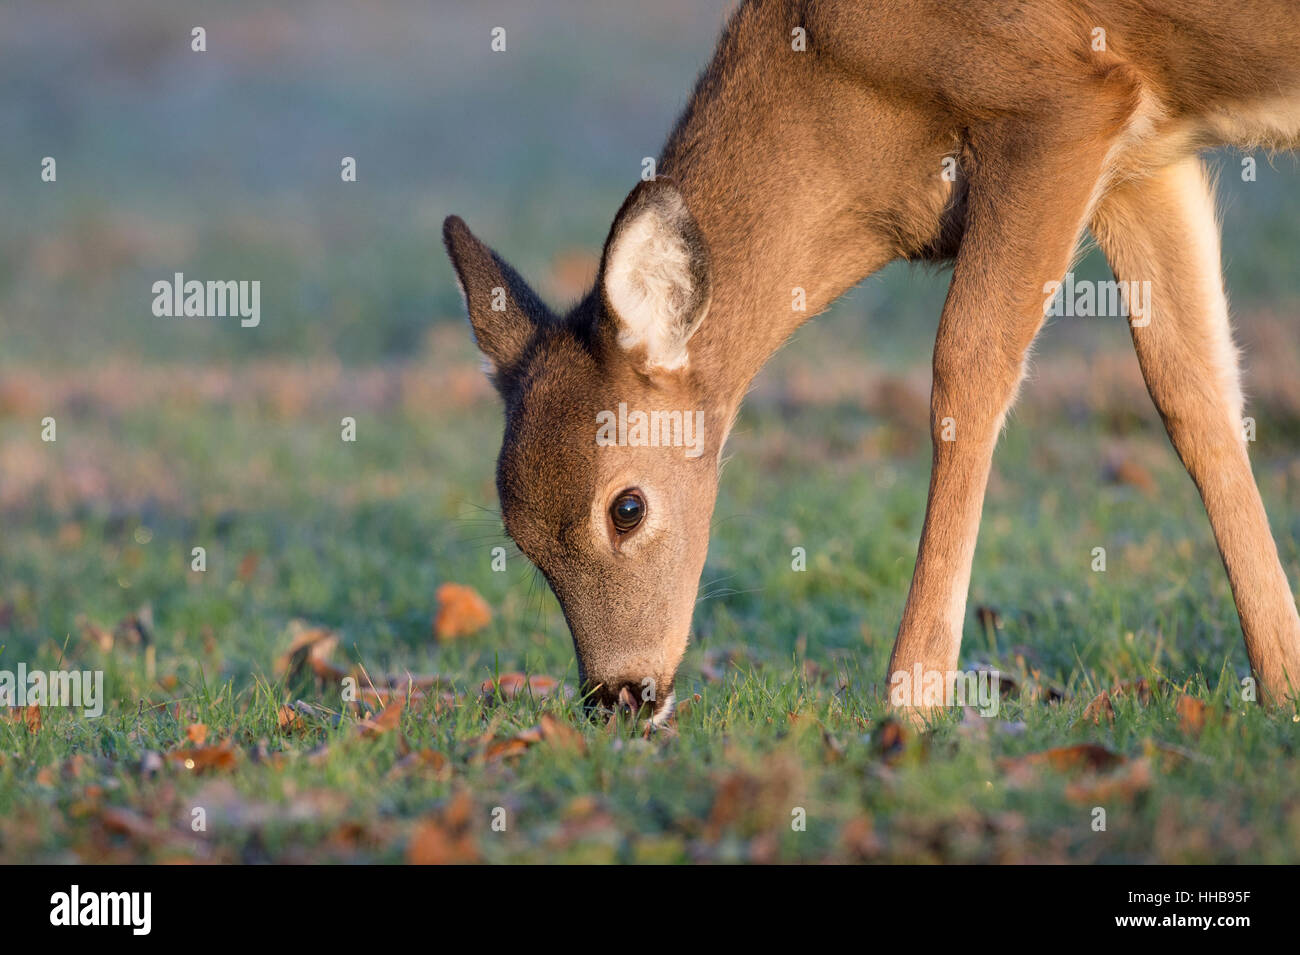 Un yearling culbianco Deer feed in un piccolo campo proprio come il sole del mattino risplende sulla sua pelliccia. Foto Stock